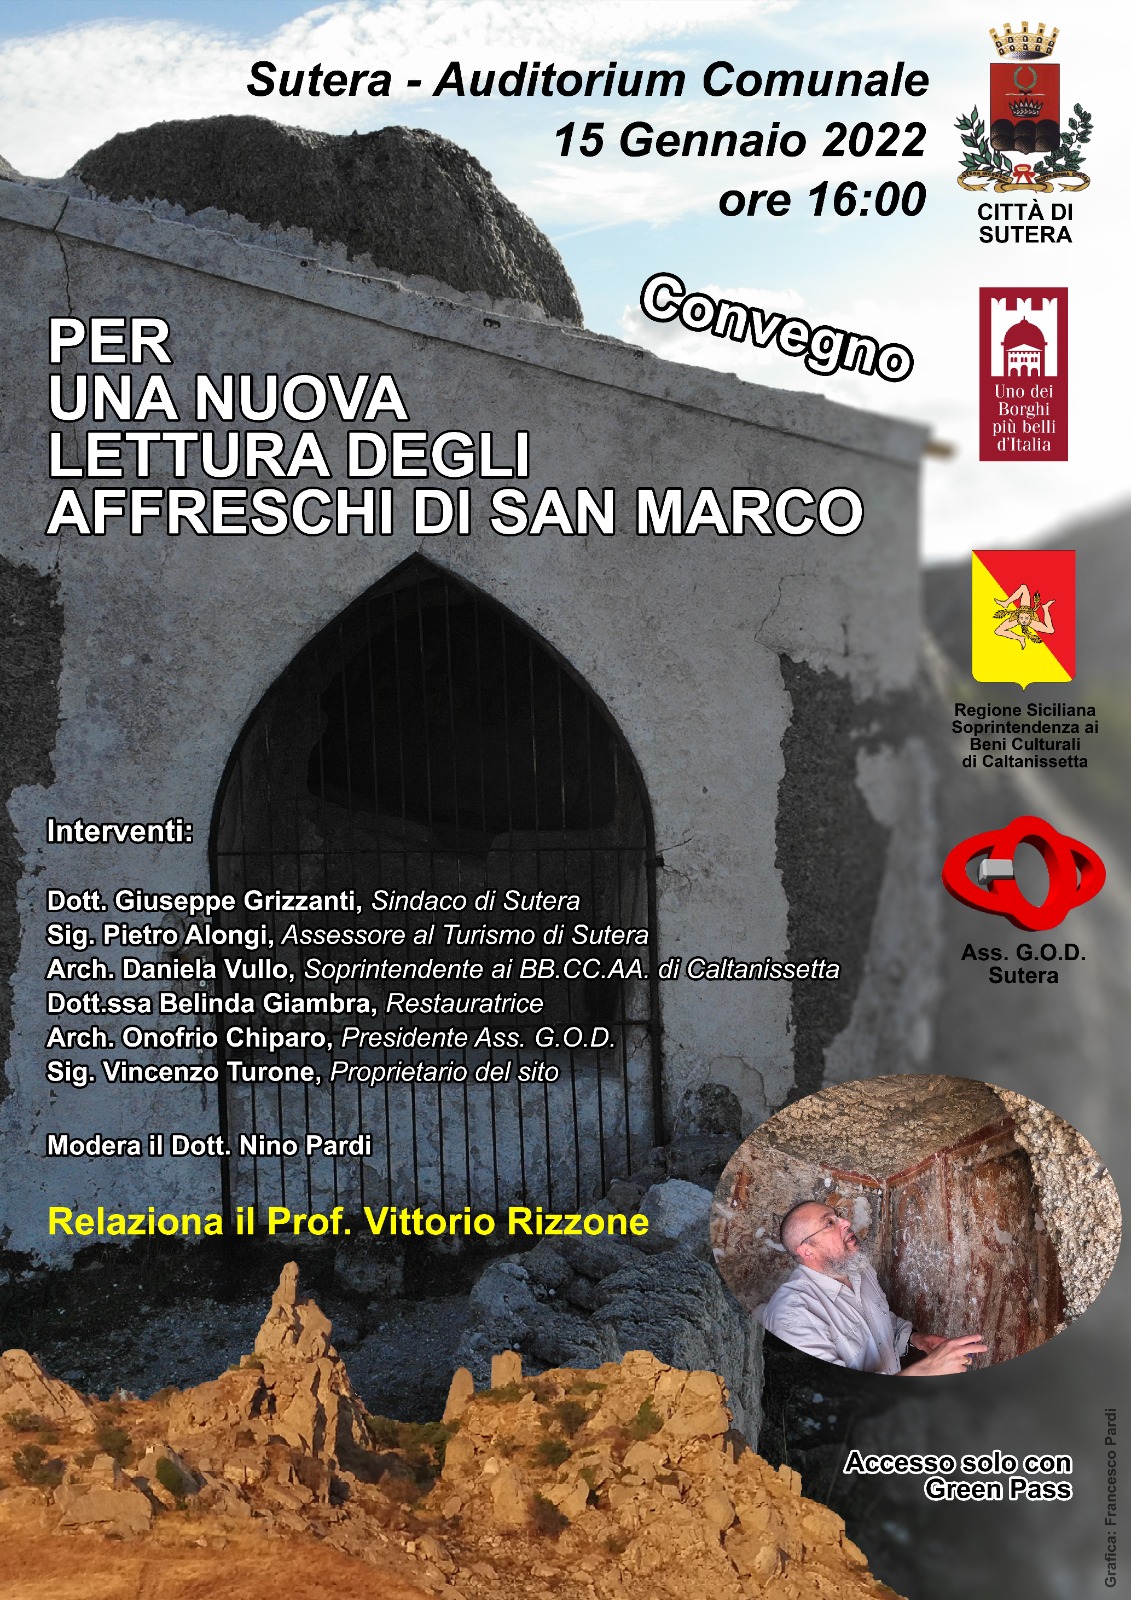 Sutera, convegno organizzato da G.O.D. “Per una nuova lettura degli affreschi di San Marco”.